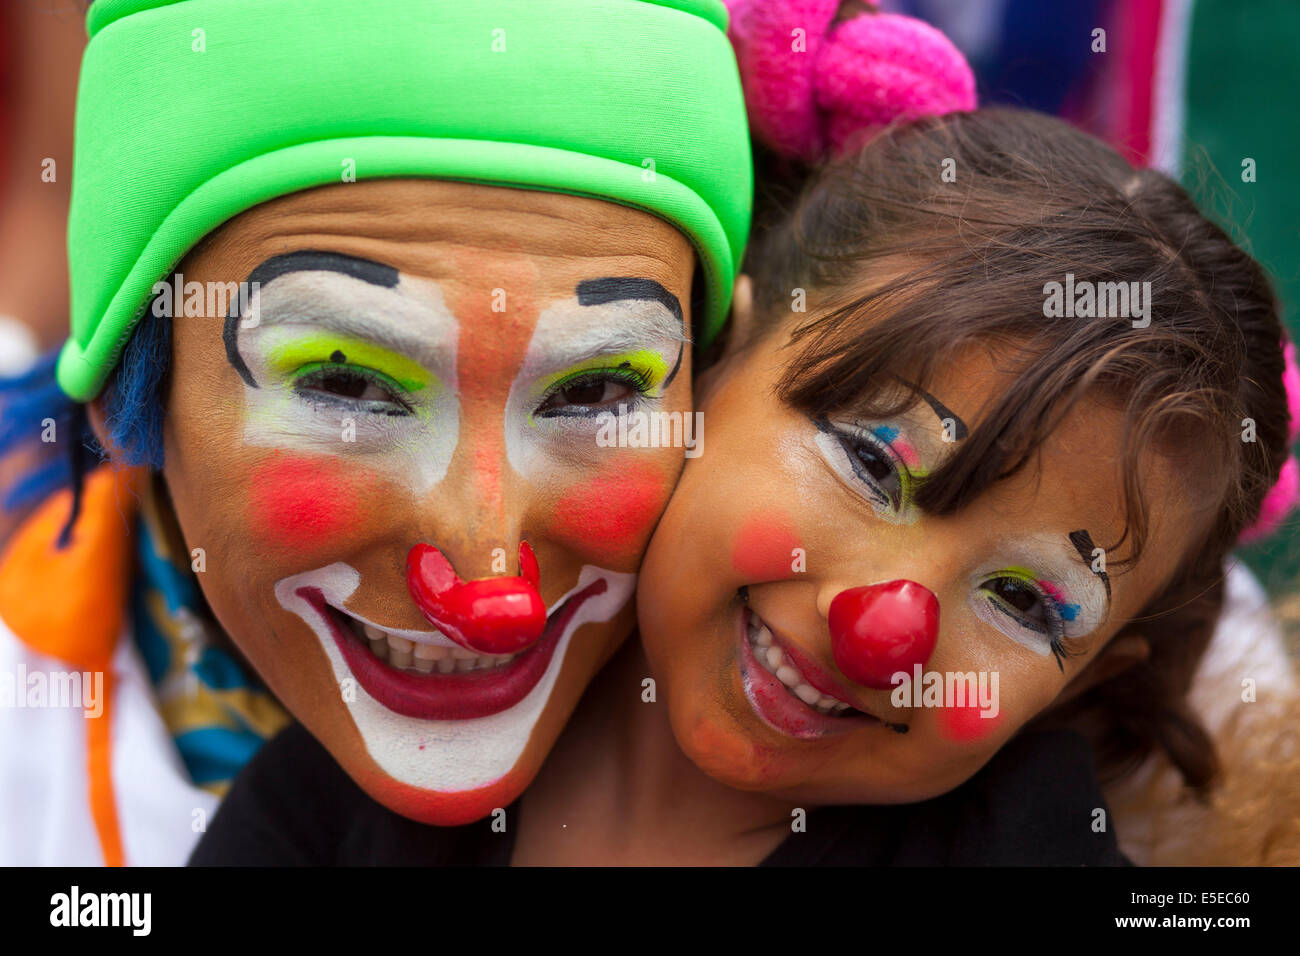 Guatemala City, Guatemala. 29 juillet, 2014. Clowns de poser pour des photos pendant le sixième Congrès latino-américain de clowns parade, au centre historique de la ville de Guatemala, capitale du Guatemala, le 29 juillet 2014. Crédit : Luis Echeverria/Xinhua/Alamy Live News Banque D'Images